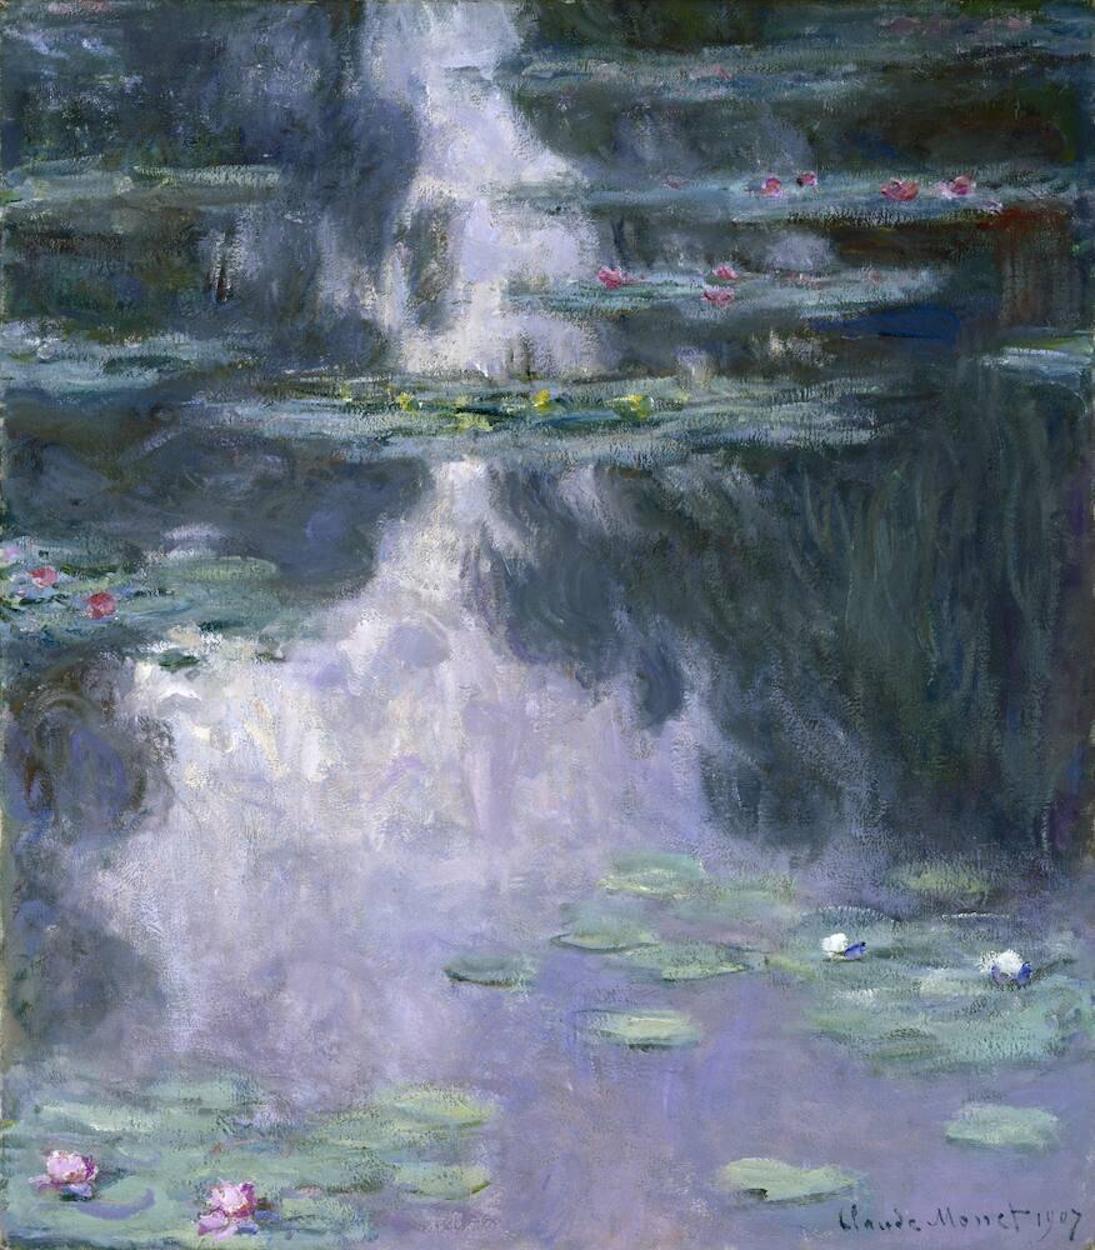 Les nymphéas by Claude Monet - 1907 - 92.1 × 81.2 cm 